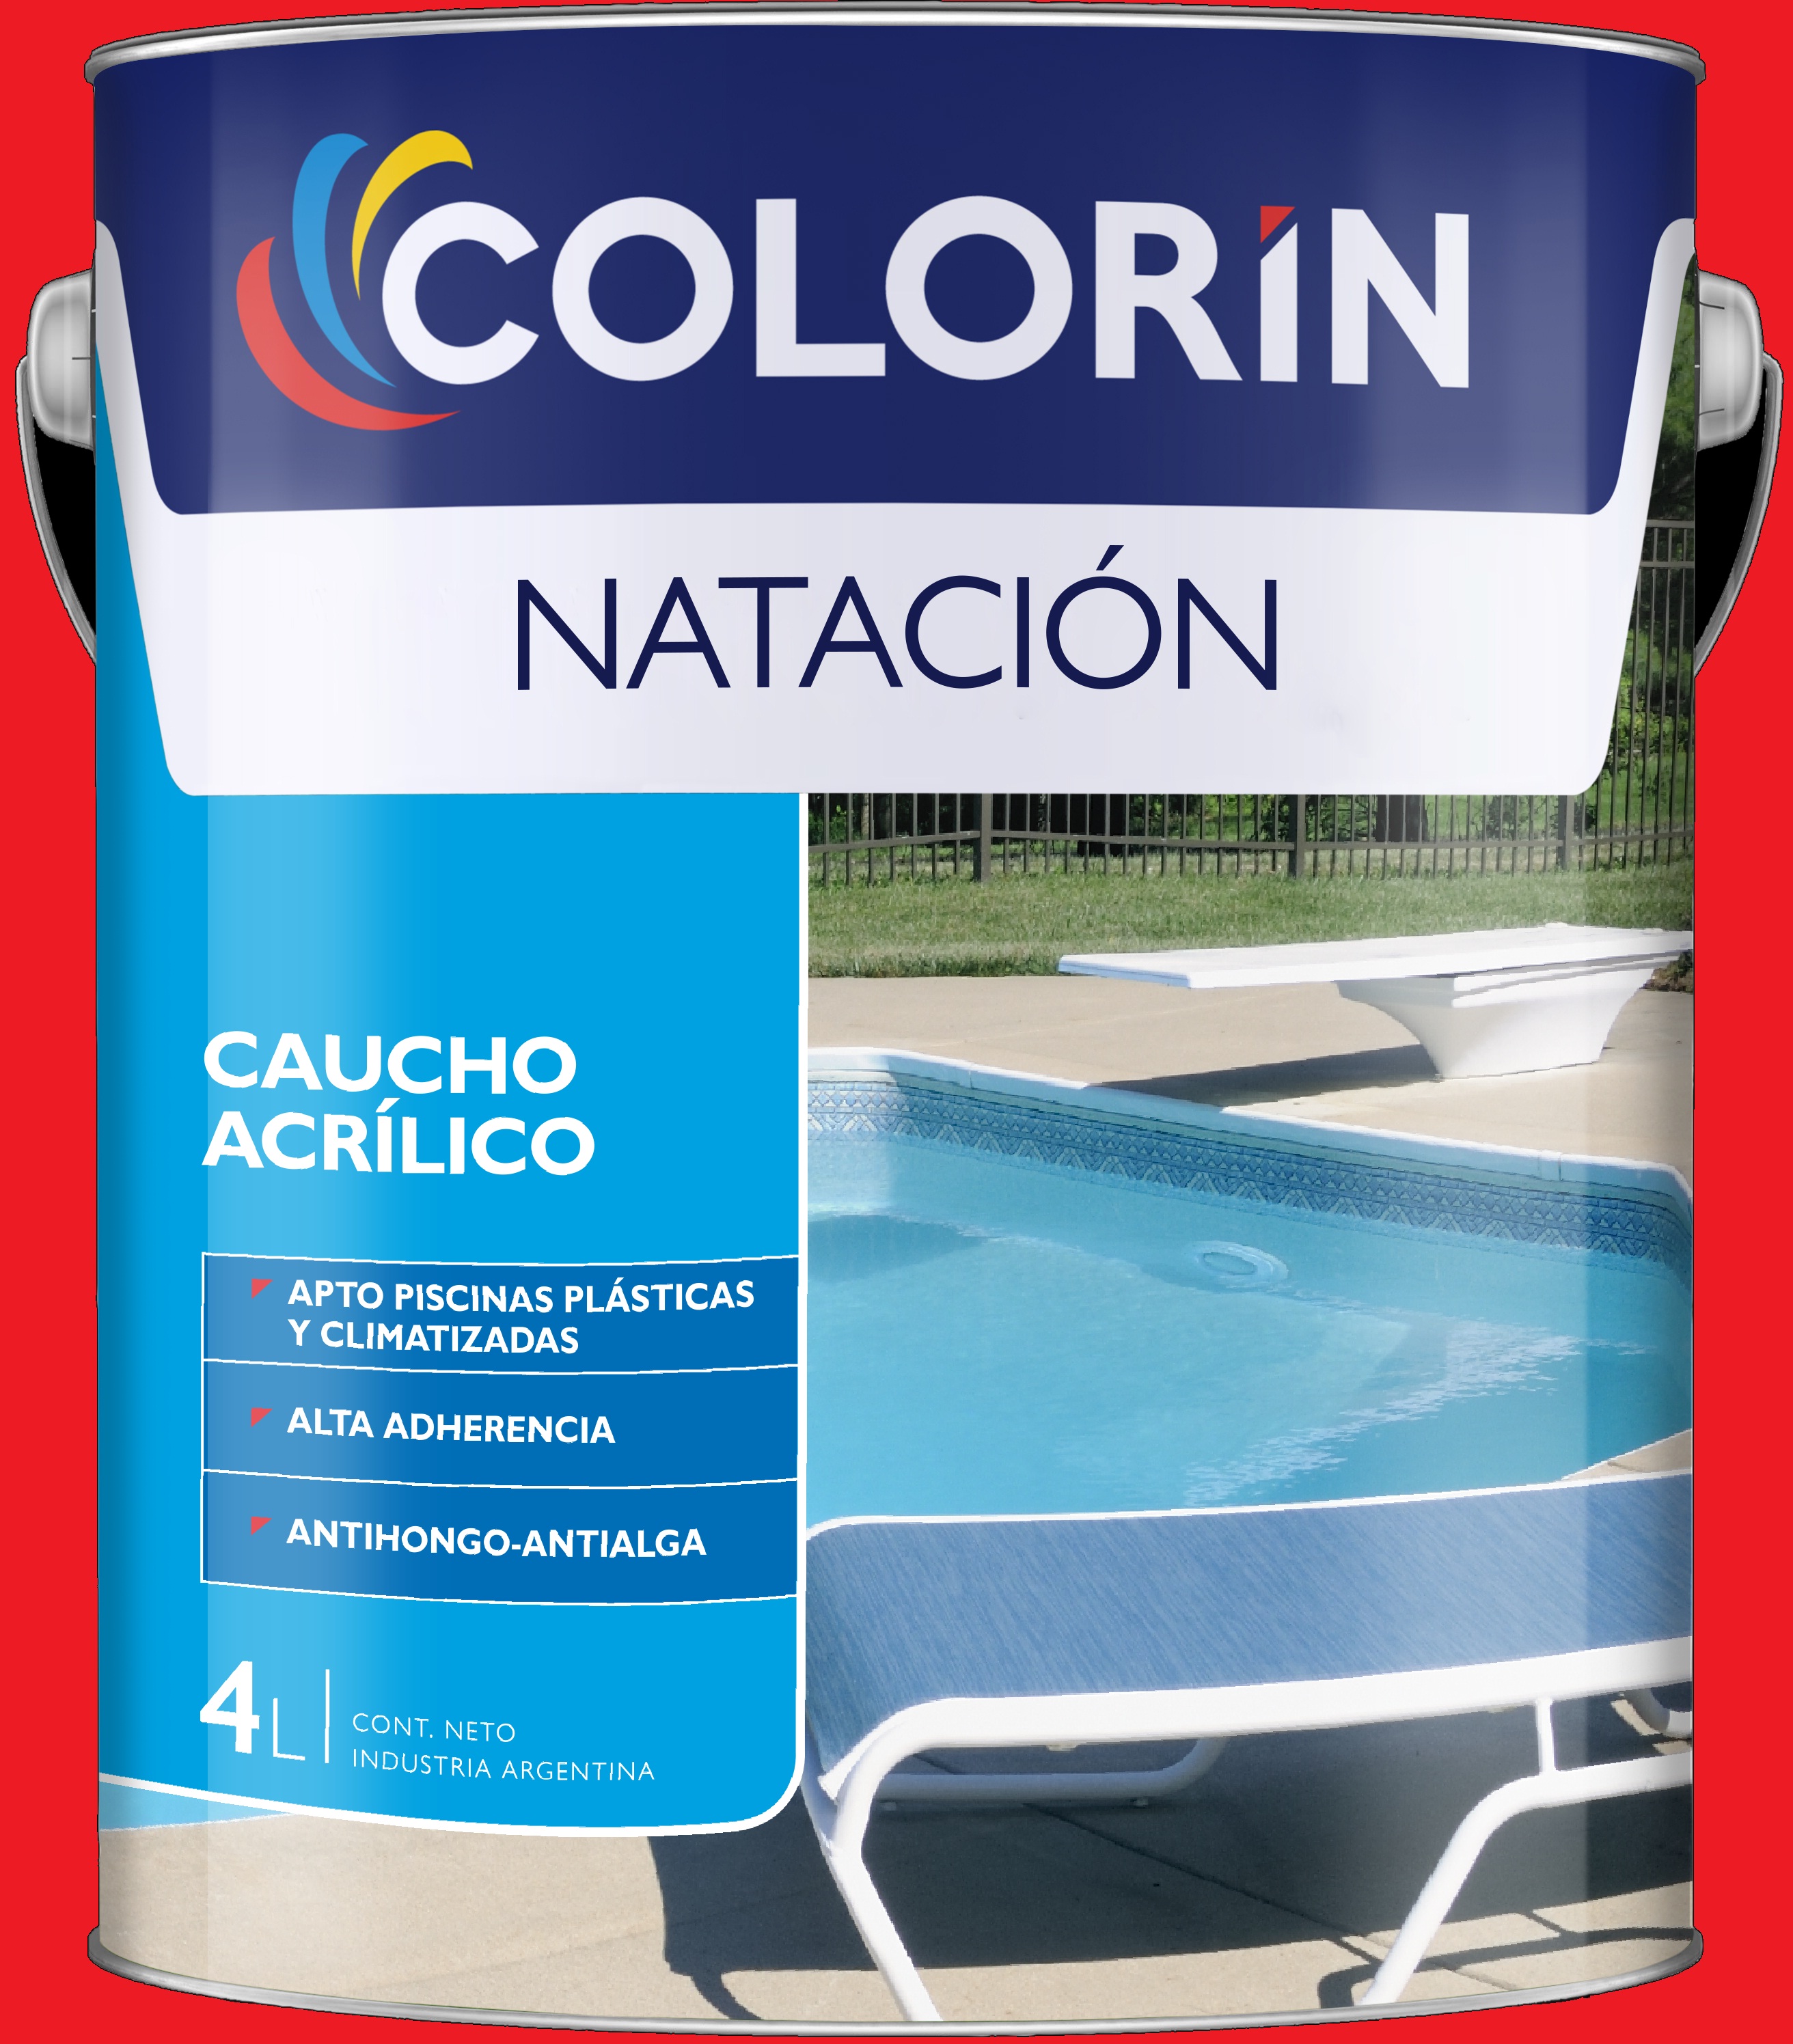 Productos: Colorin Natacion Caucho Acrilico